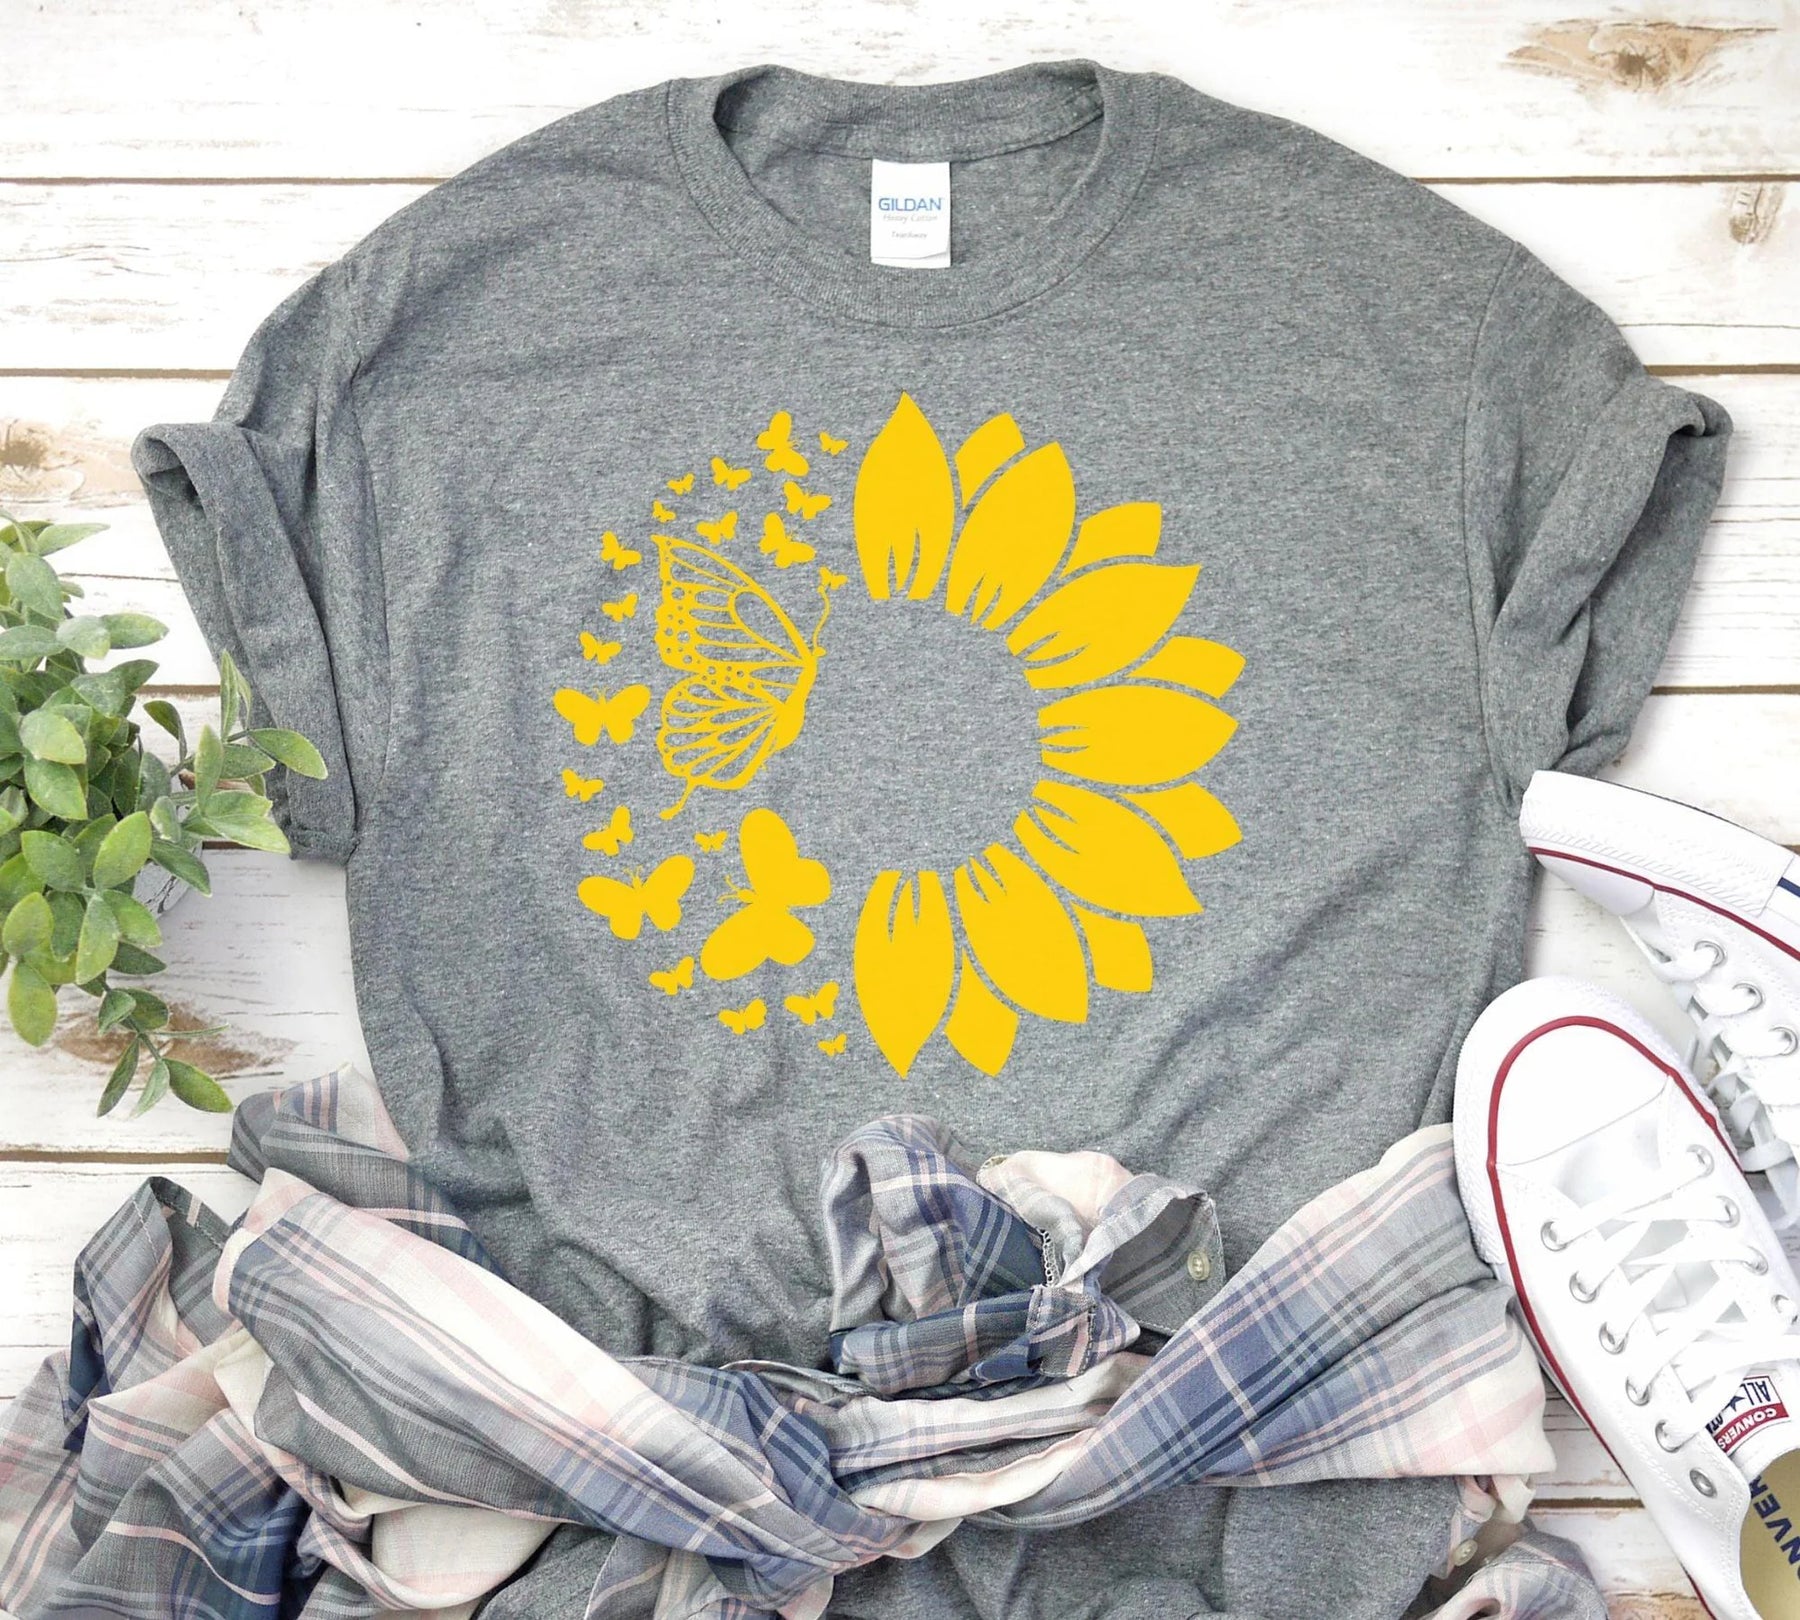 Sunflower & Butterflies Shirt